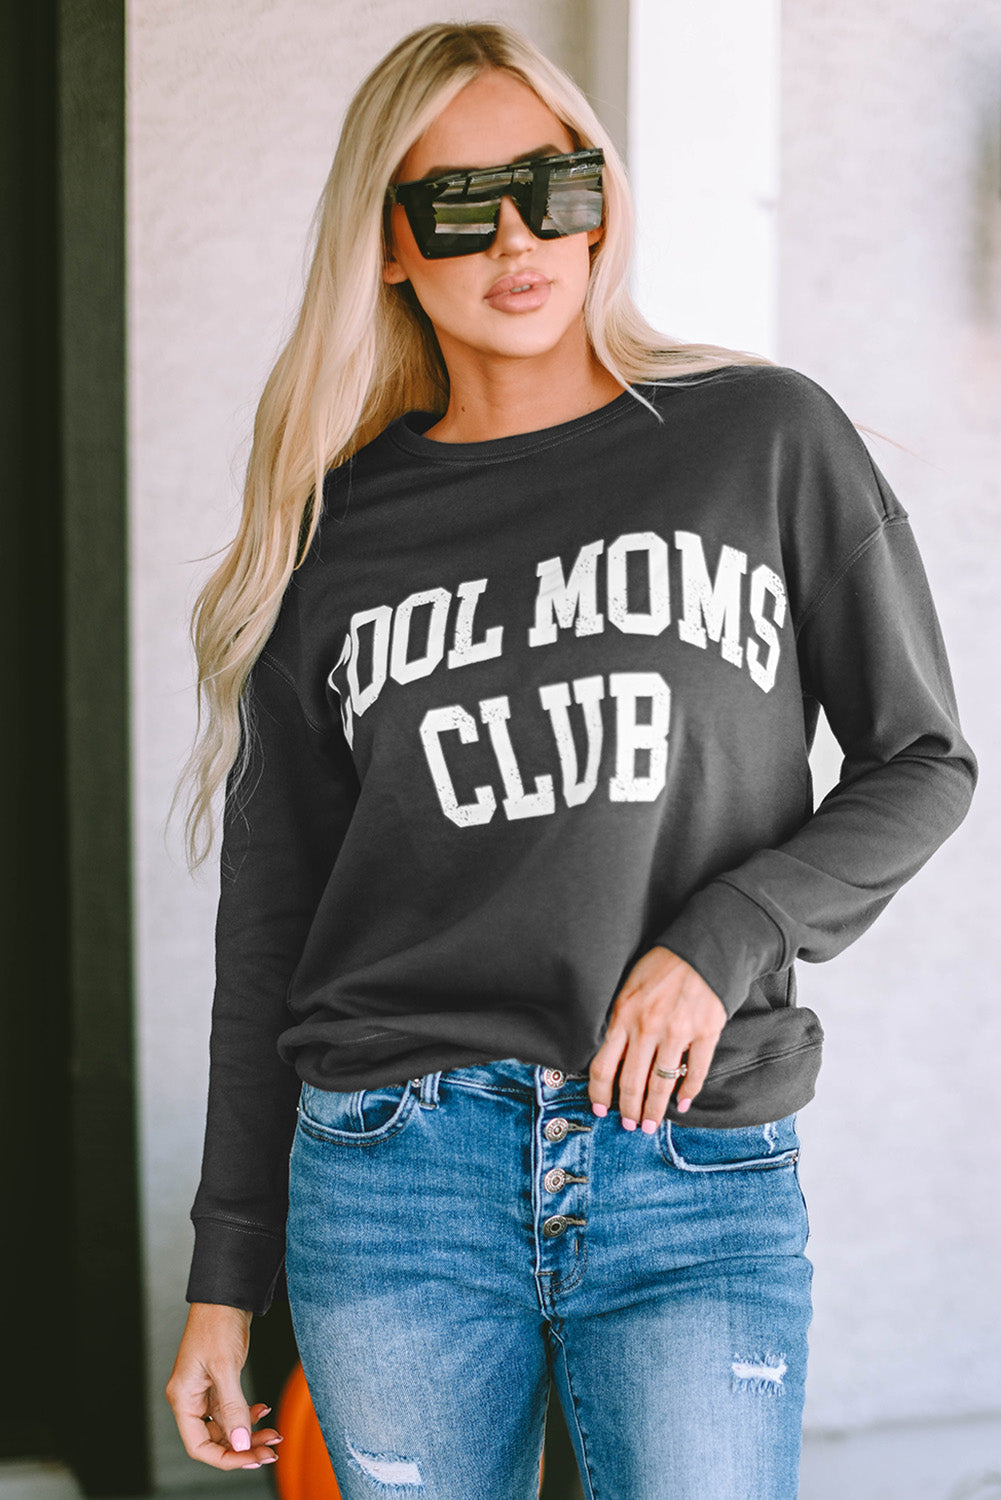 COOL MOM CLUB Sweatshirt | AdoreStarr